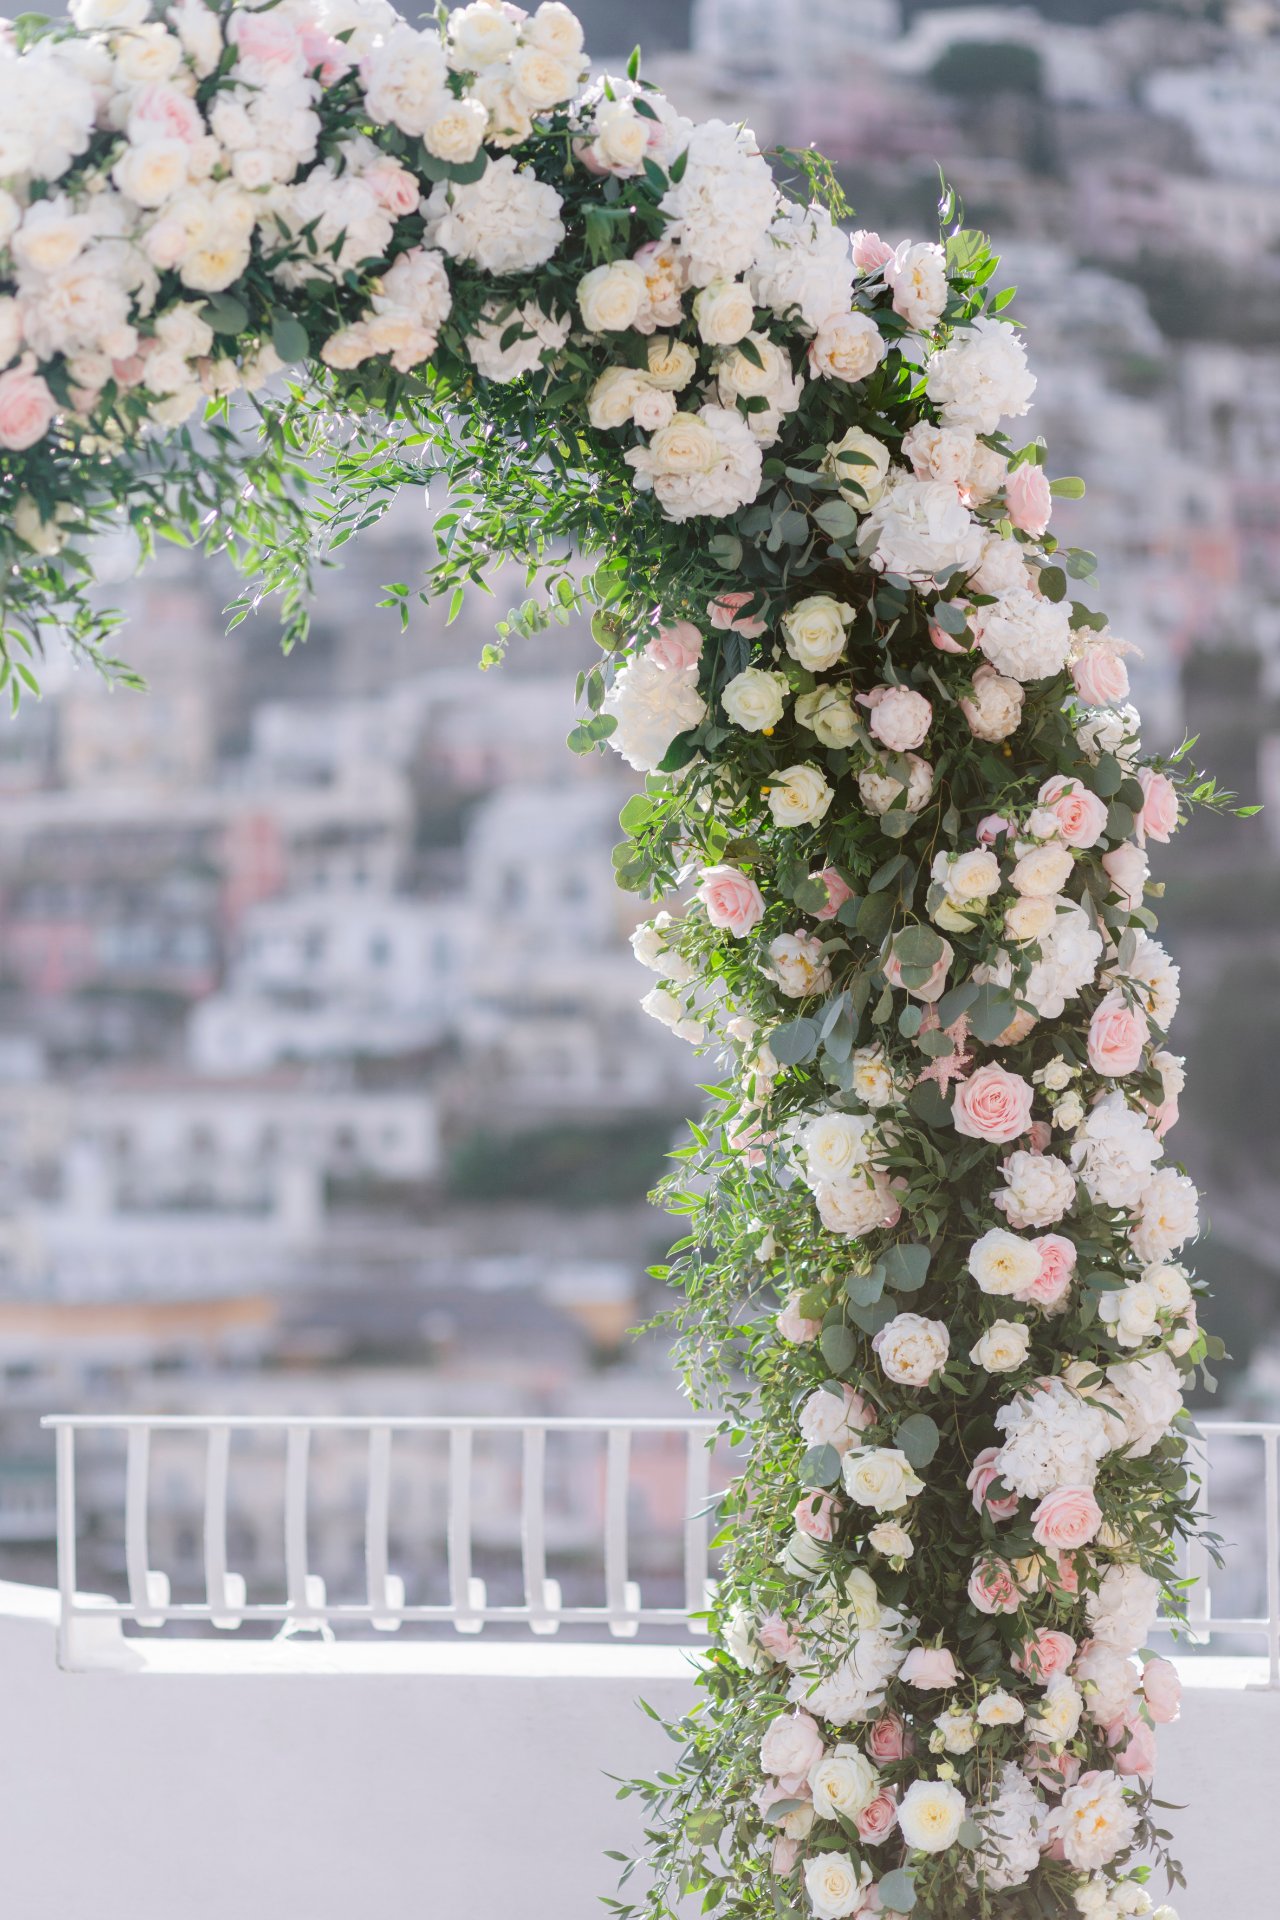 destination-wedding-positano-flowers-arch-details